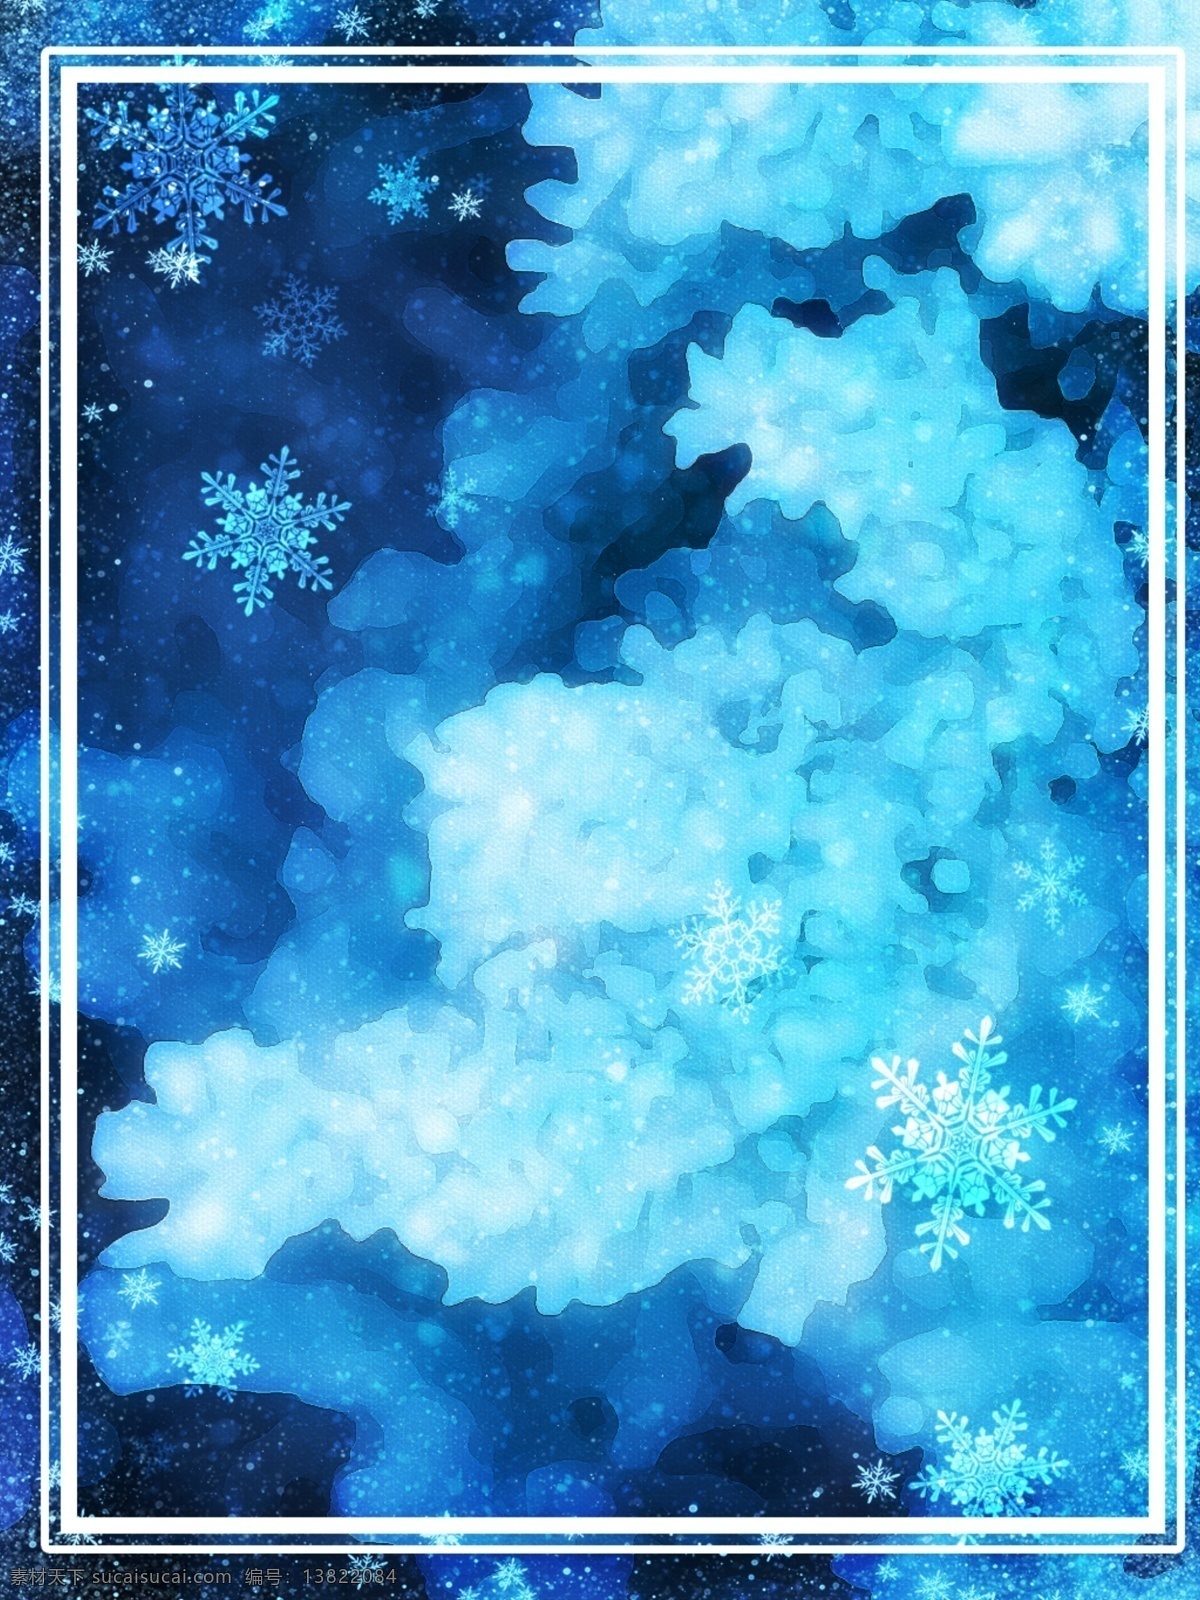 深蓝色 梦幻 冬天 雪花 背景 冬天背景 雪花背景 梦幻蓝色 深色背景 下雪边框